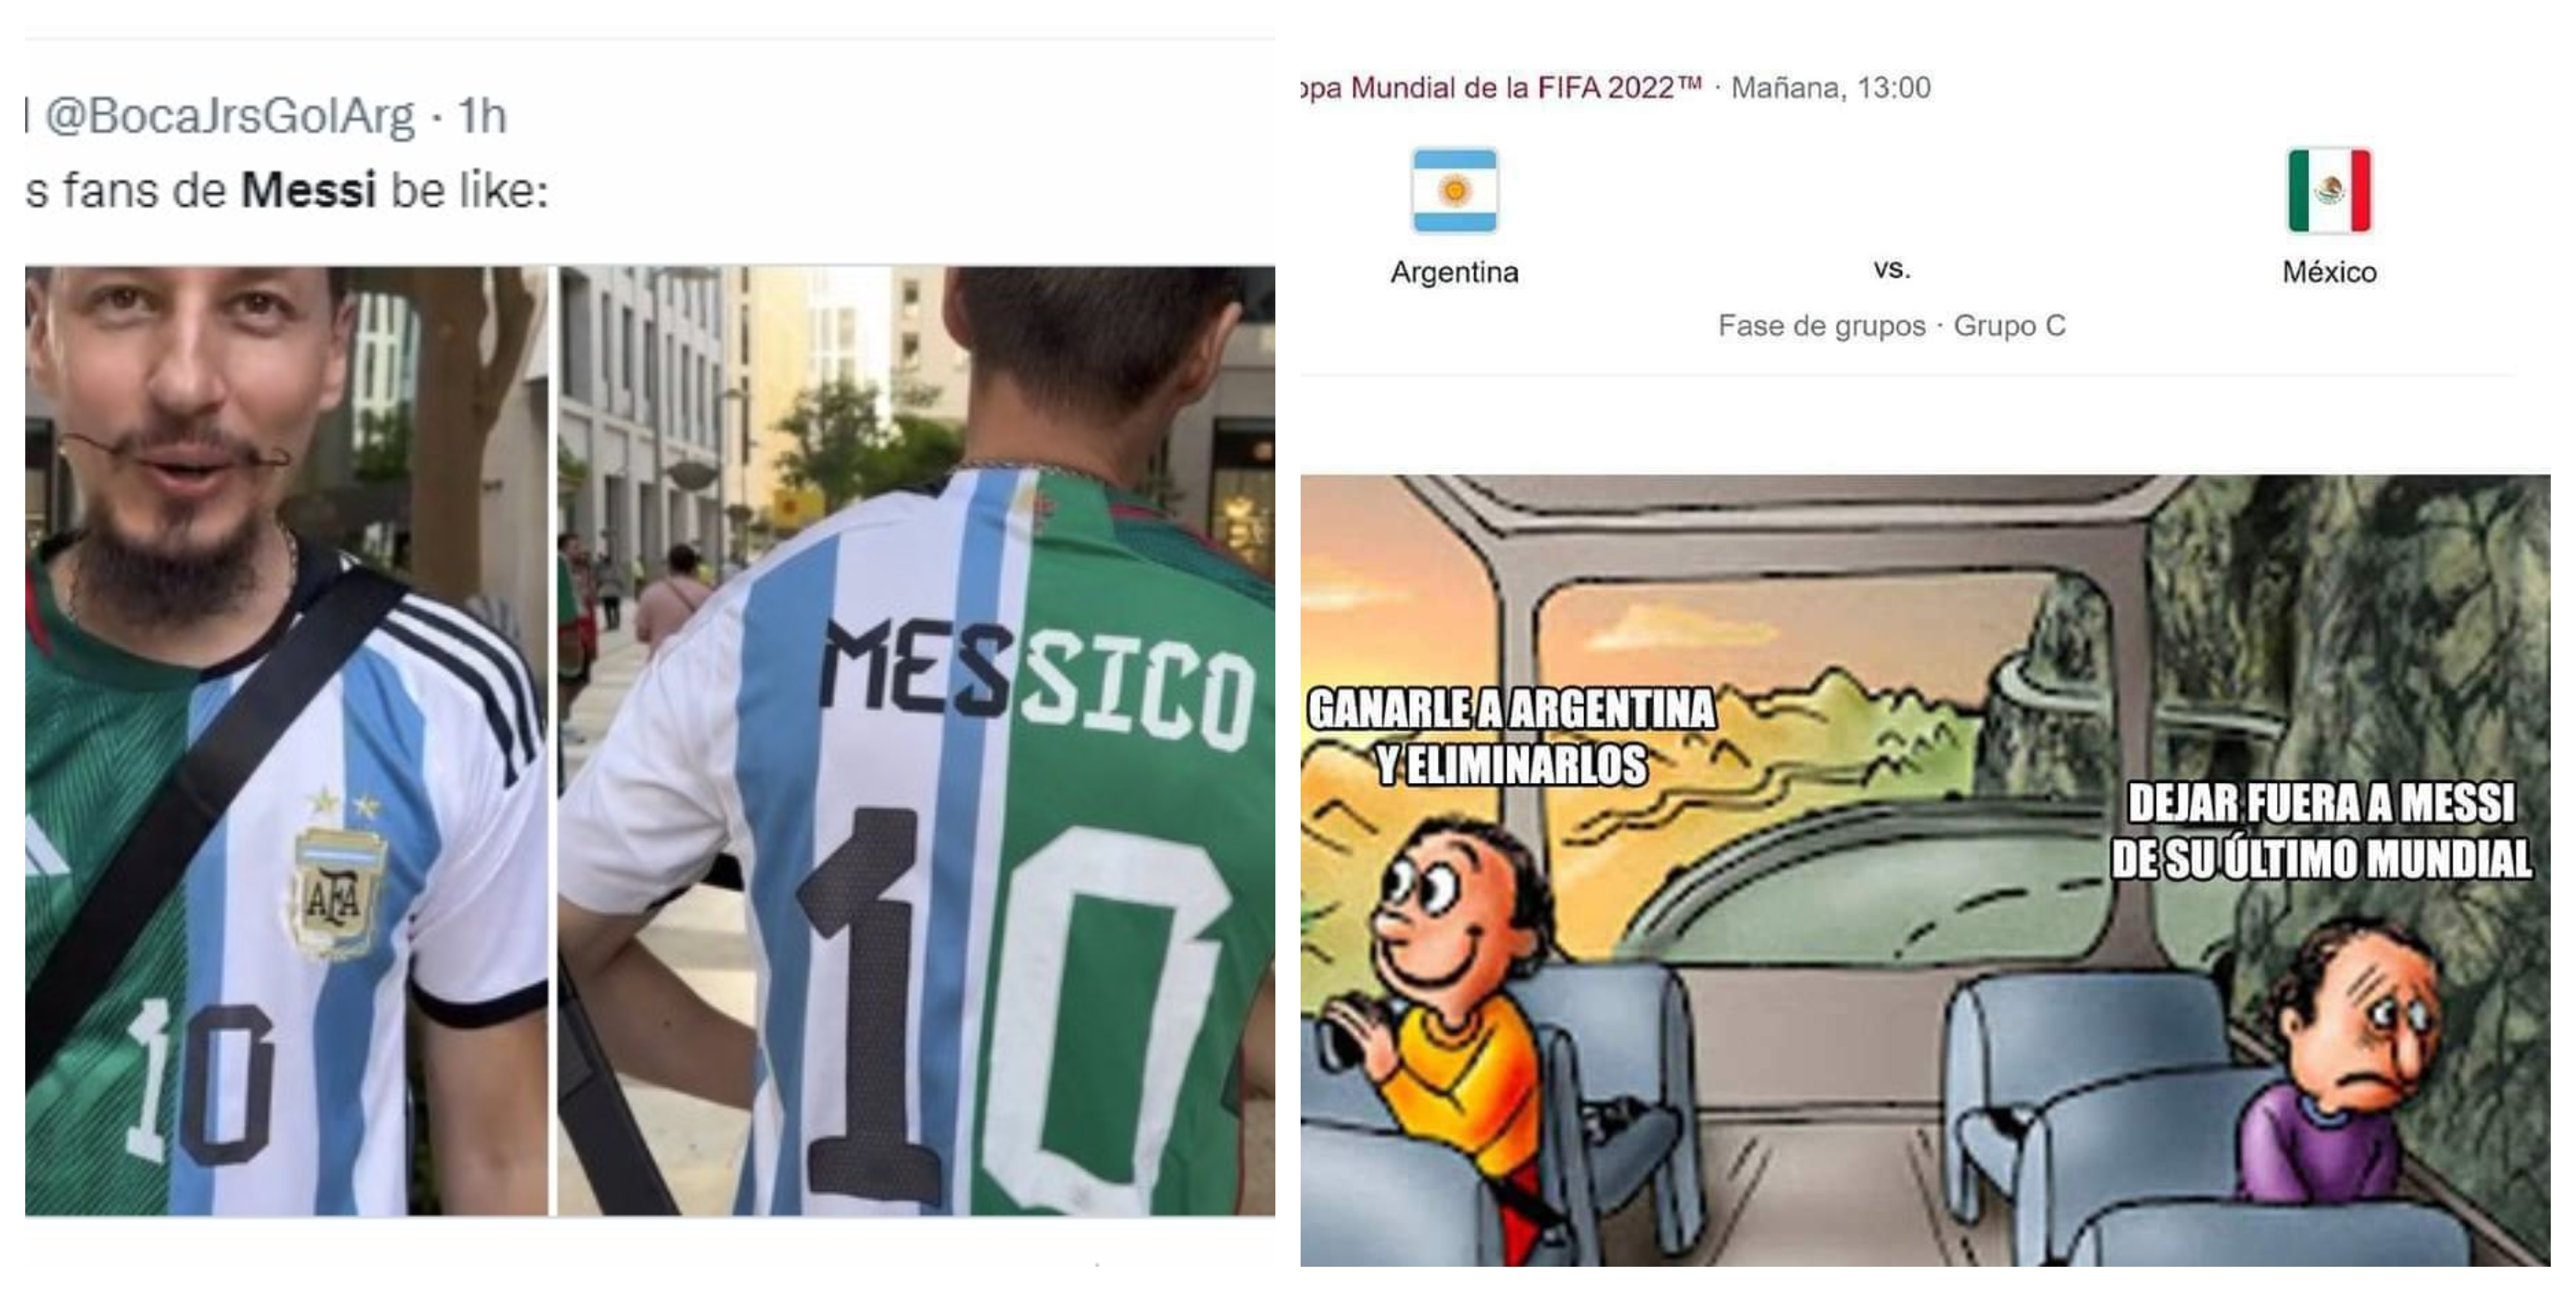 Usuarios de redes sociales reaccionaron con memes a la división del fanatismo que algunos mexicanos tienen por Lionel Messi y su equipo tricolor (Foto: Captura de pantalla)